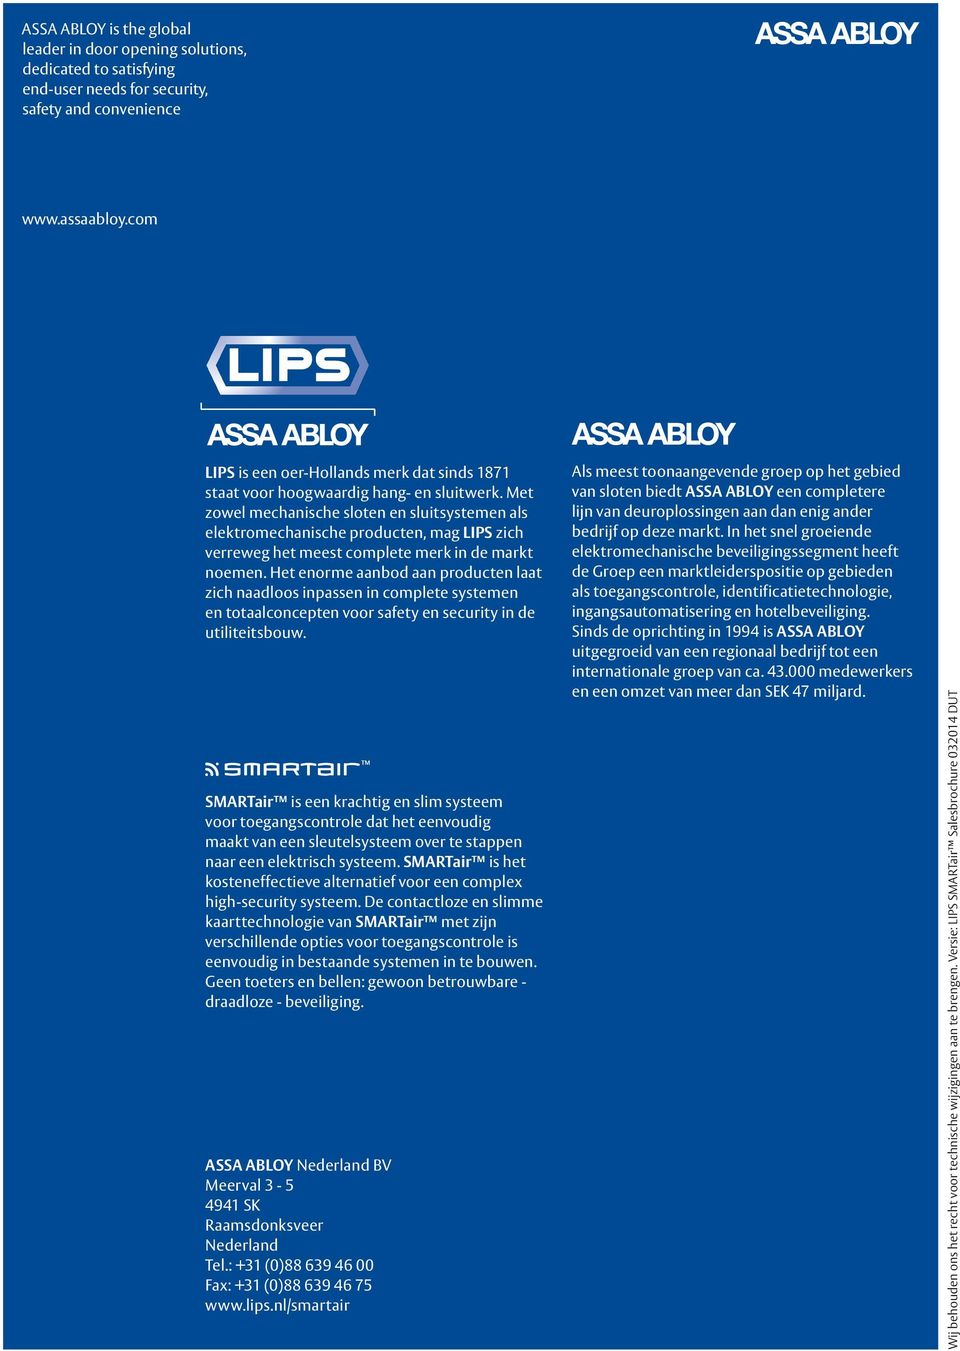 Met zowel mechanische sloten en sluitsystemen als elektromechanische producten, mag LIPS zich verreweg het meest complete merk in de markt noemen.